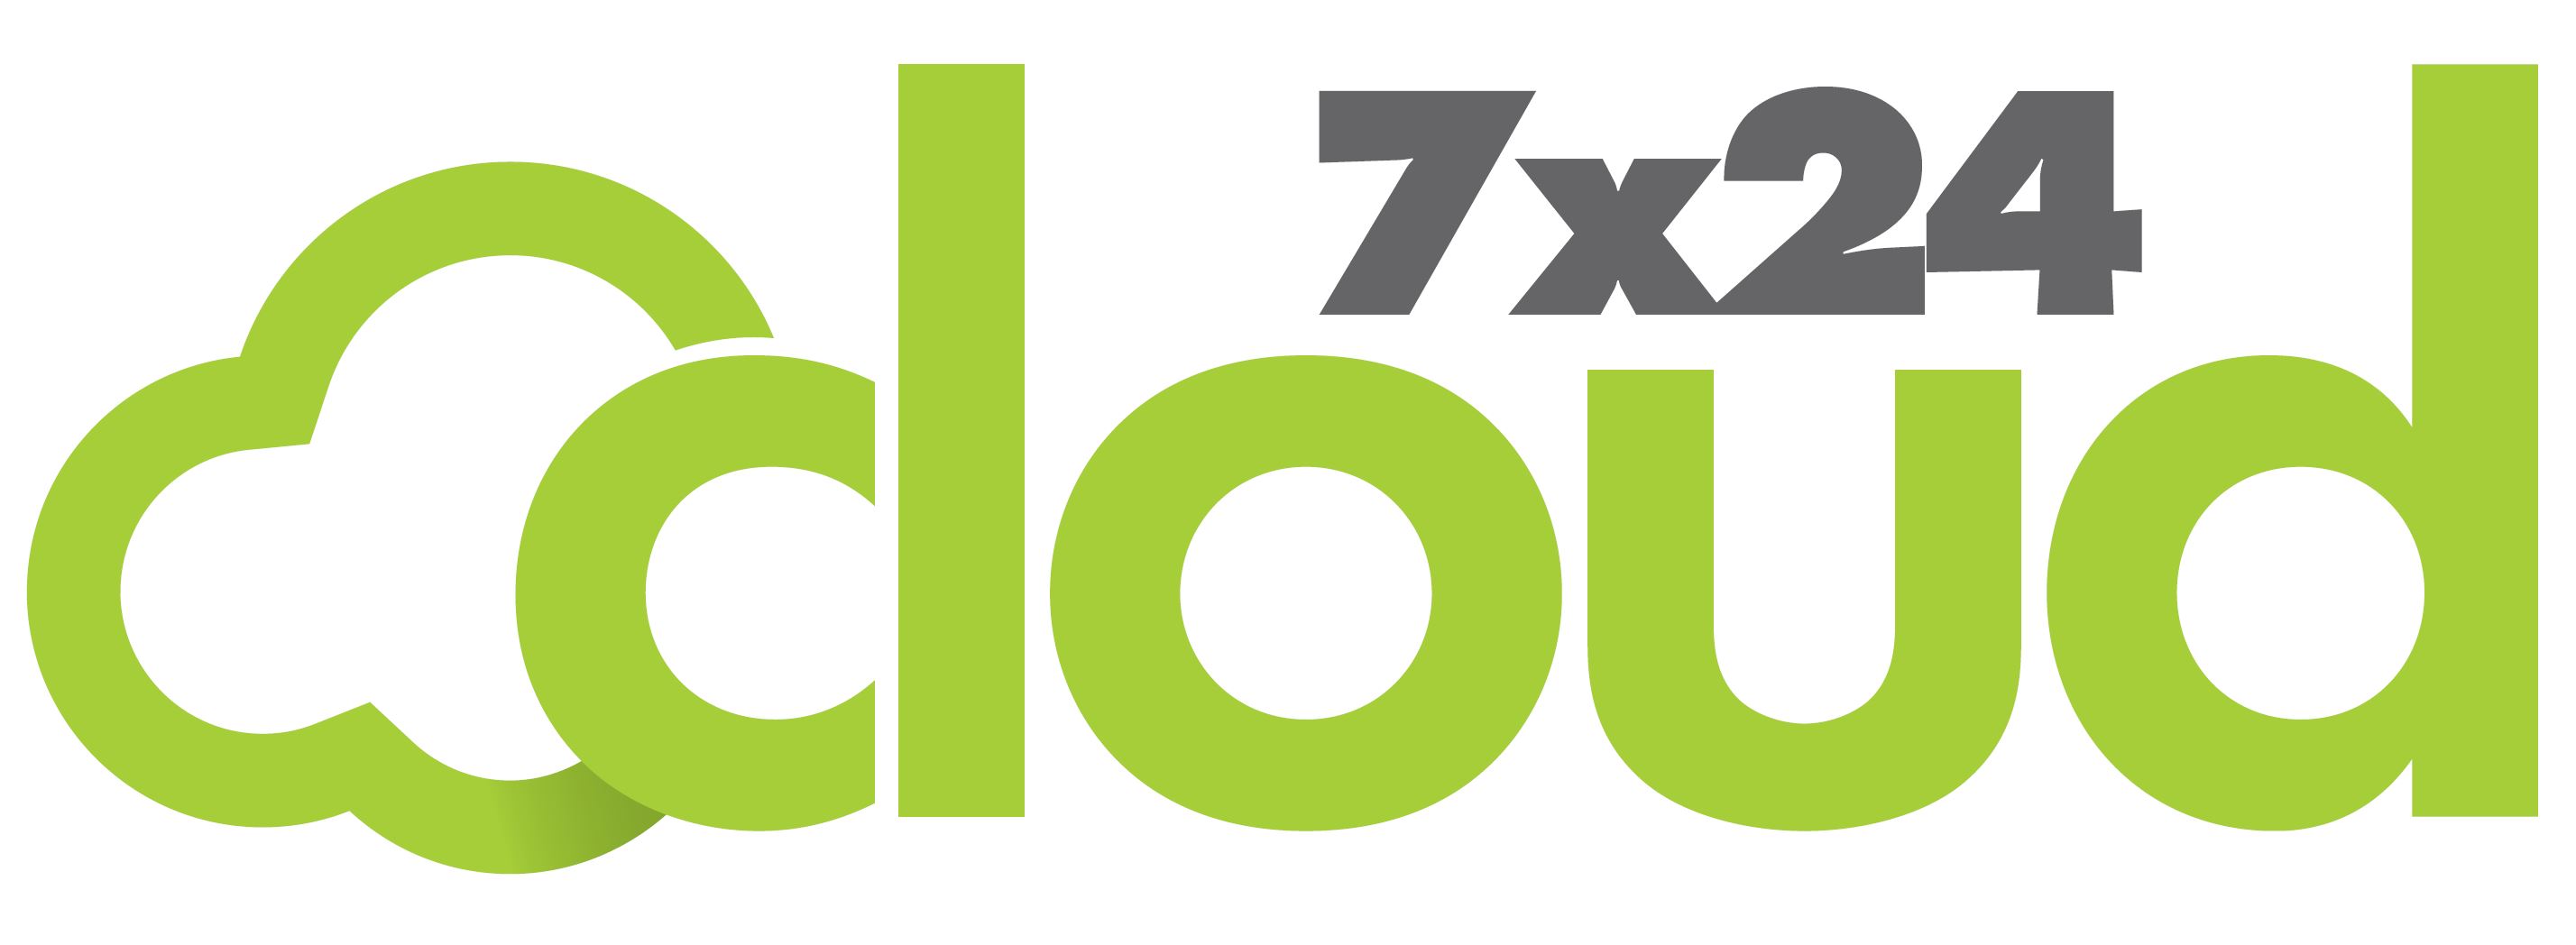 Cloud 7x24